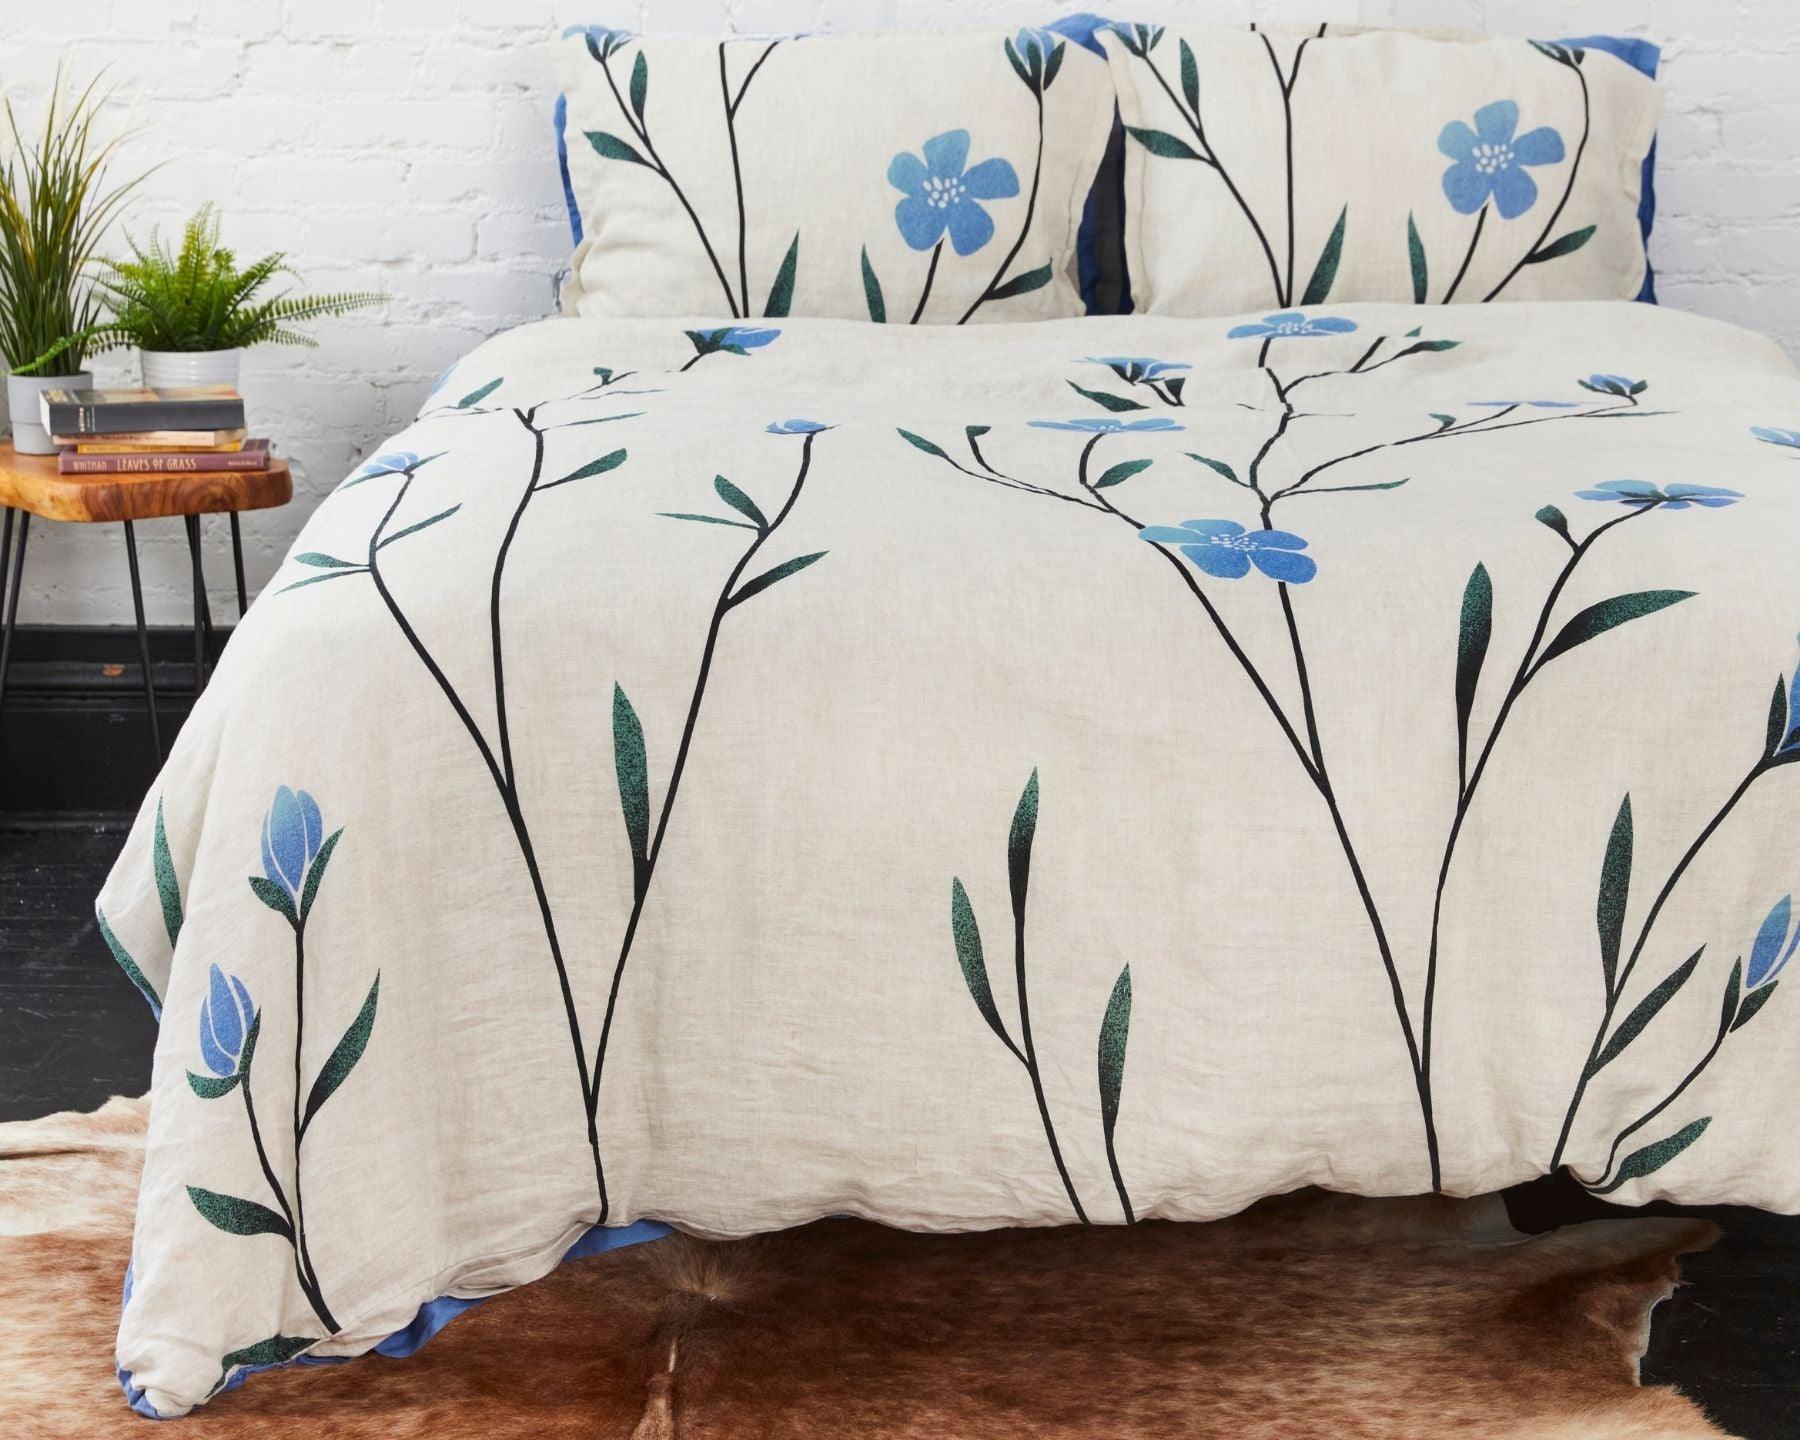 Blue Floral 100% Cotton Duvet Cover Set,cute Fresh Floral Bedding